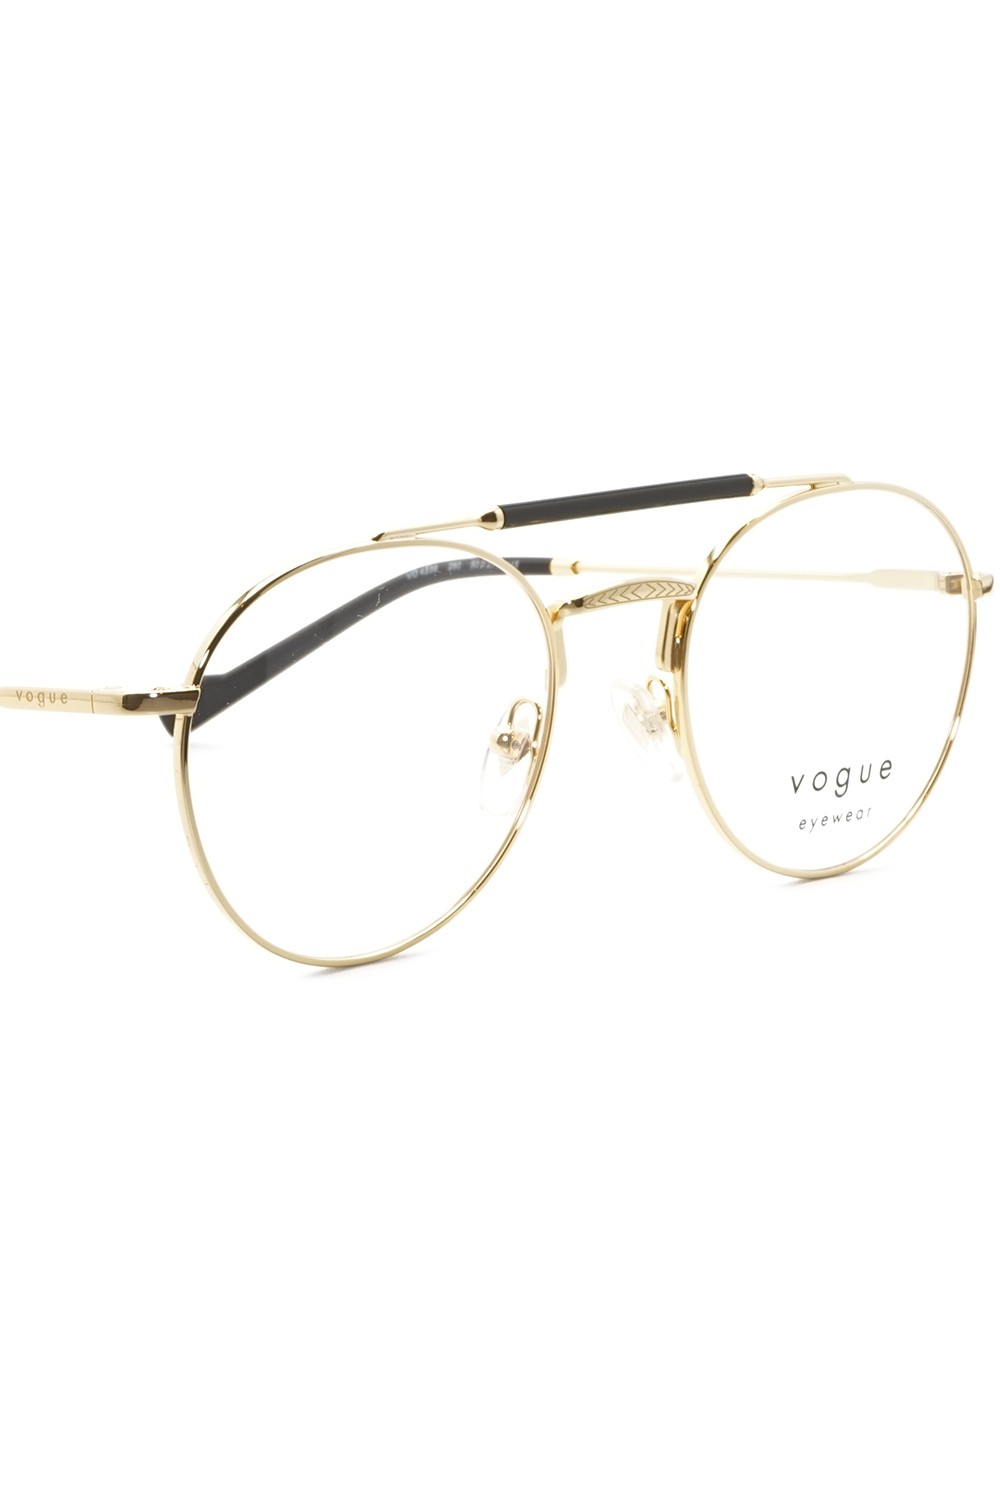 Vogue - Occhiali da vista in metallo tondi unisex oro